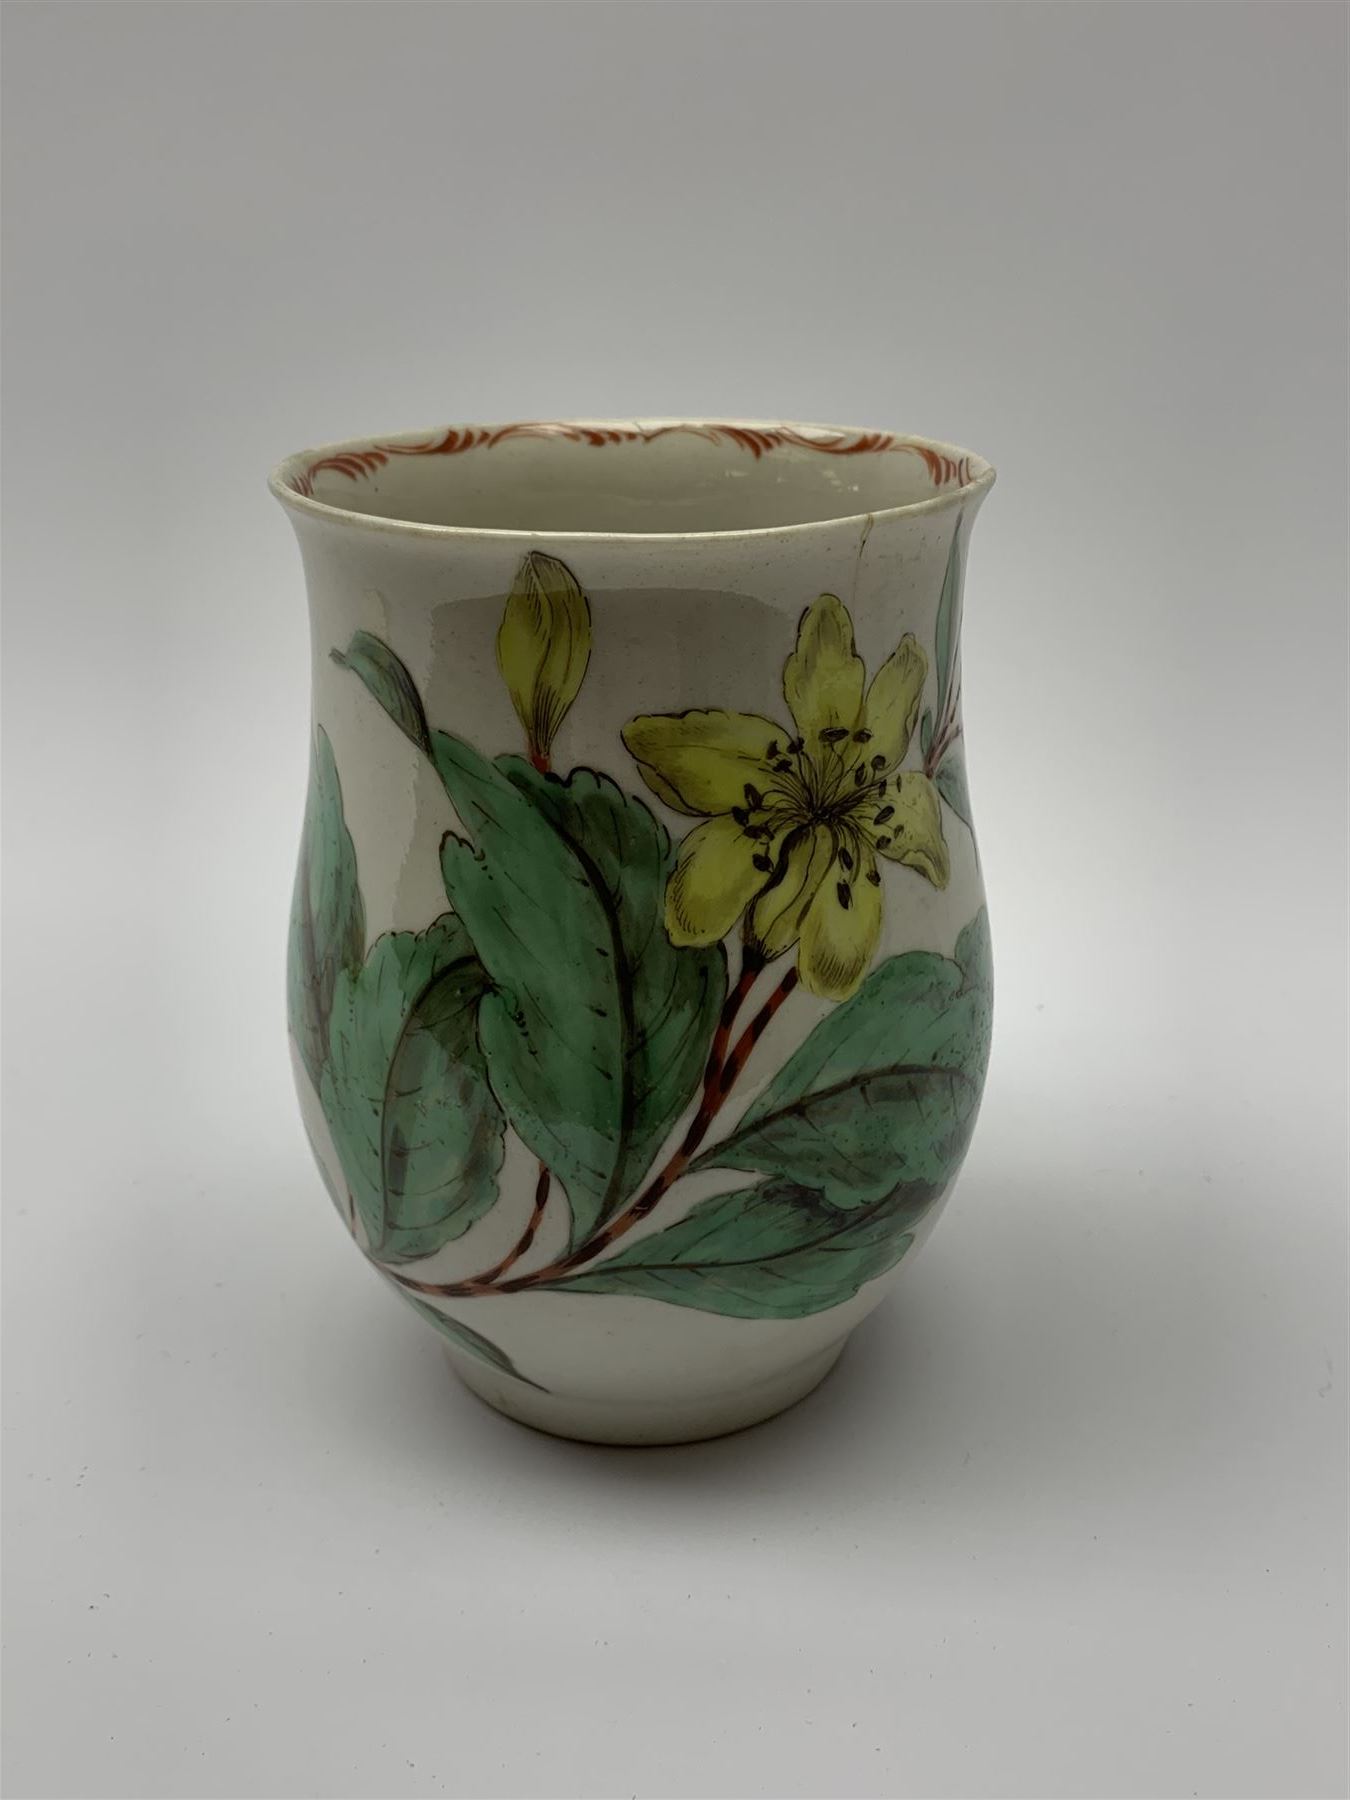 18th century porcelain mug - Image 3 of 8